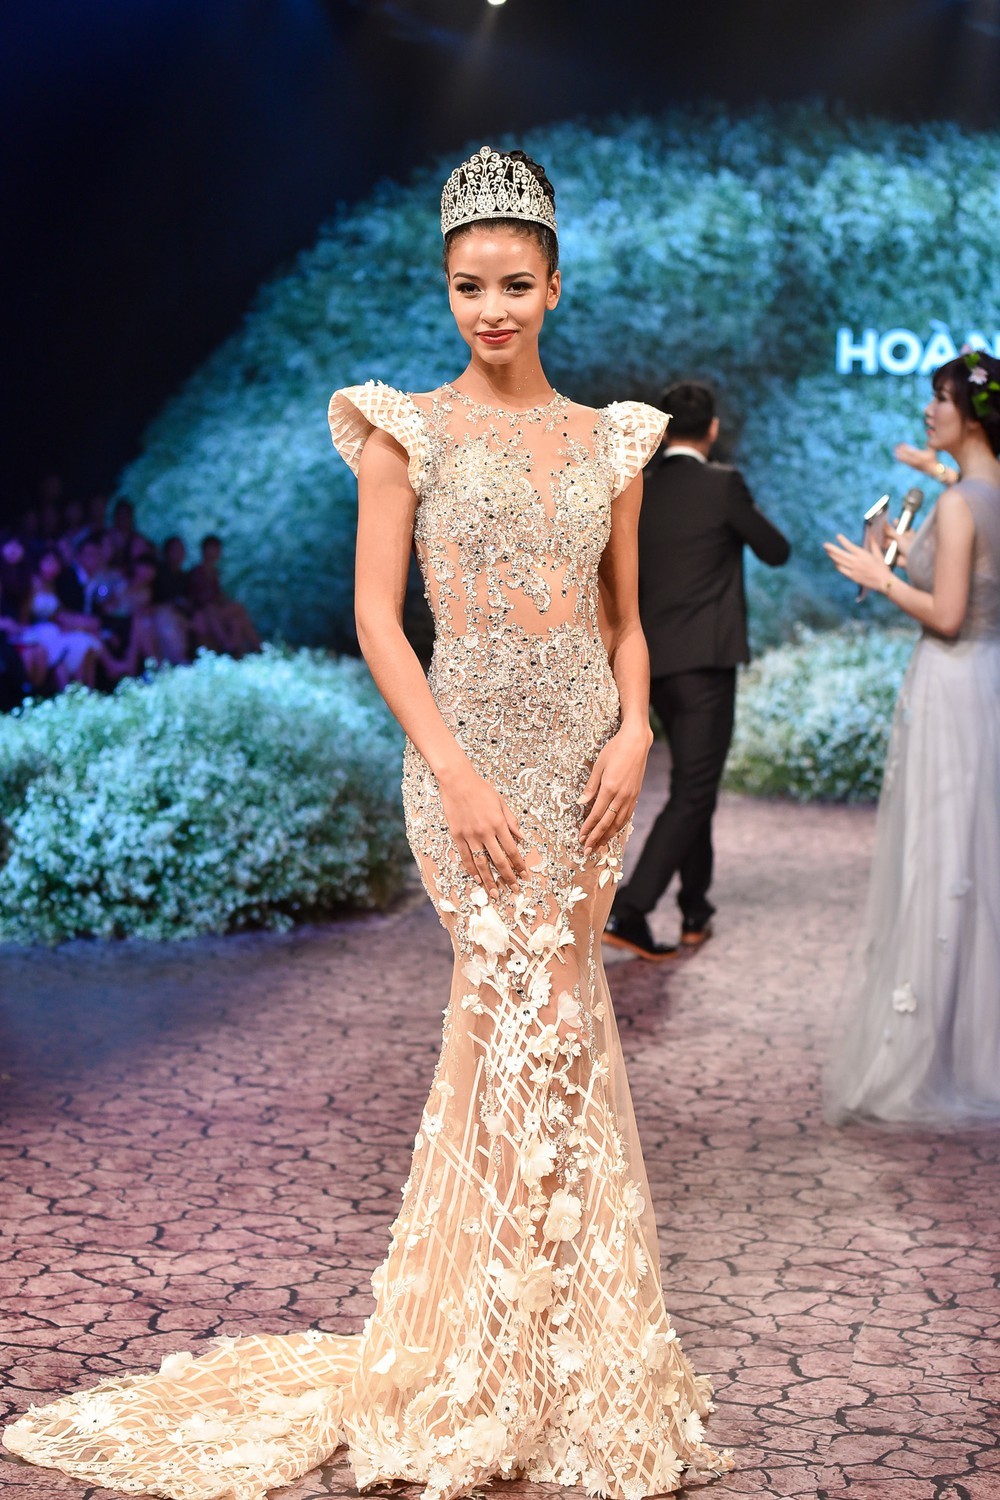  
Mẹ chồng Hà Tăng mua lại chiếc váy do Hoa hậu Pháp mặc với số tiền 20.000 USD khiến cư dân mạng trầm trồ về độ chịu chi của bà. Ảnh: Baomoi